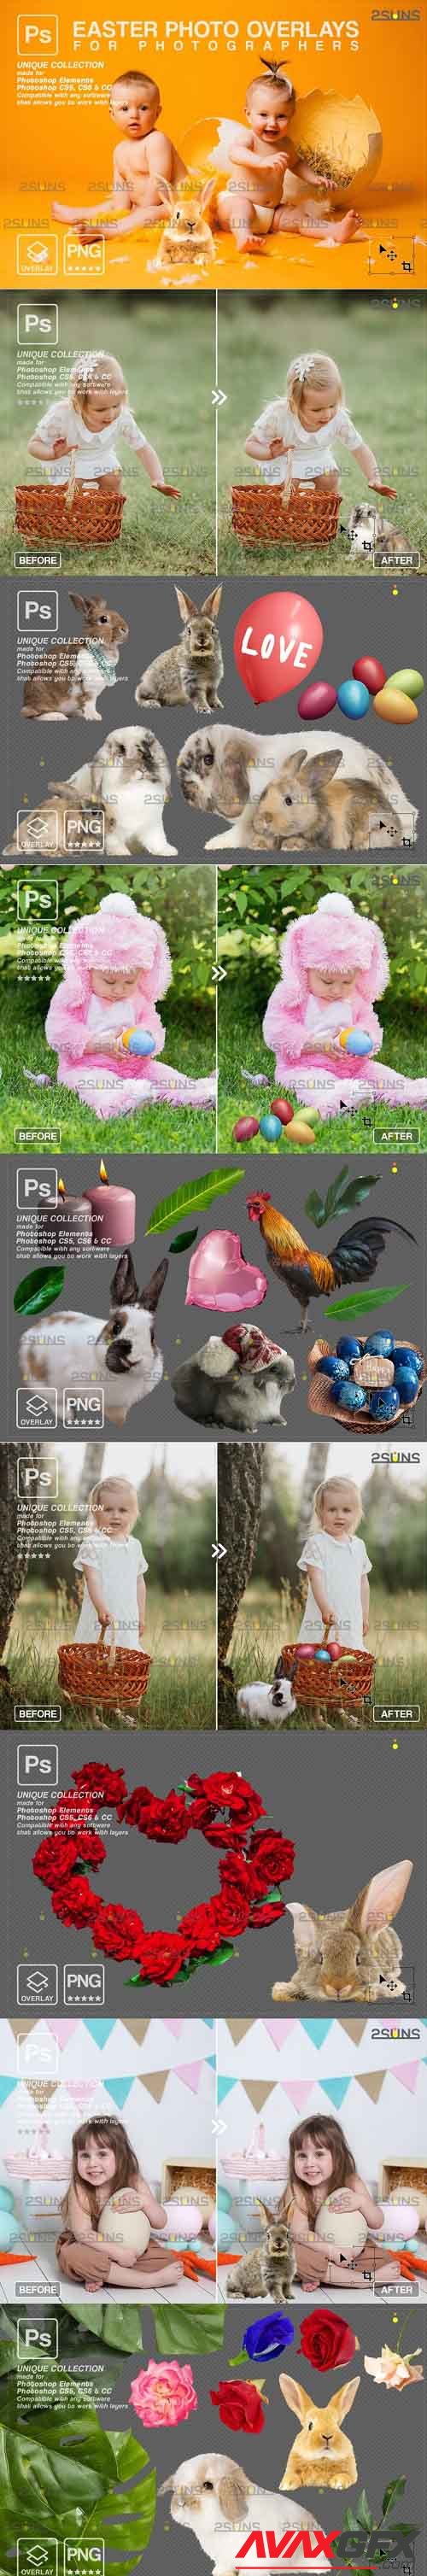 Photoshop overlay Easter bunny overlay - 1222129